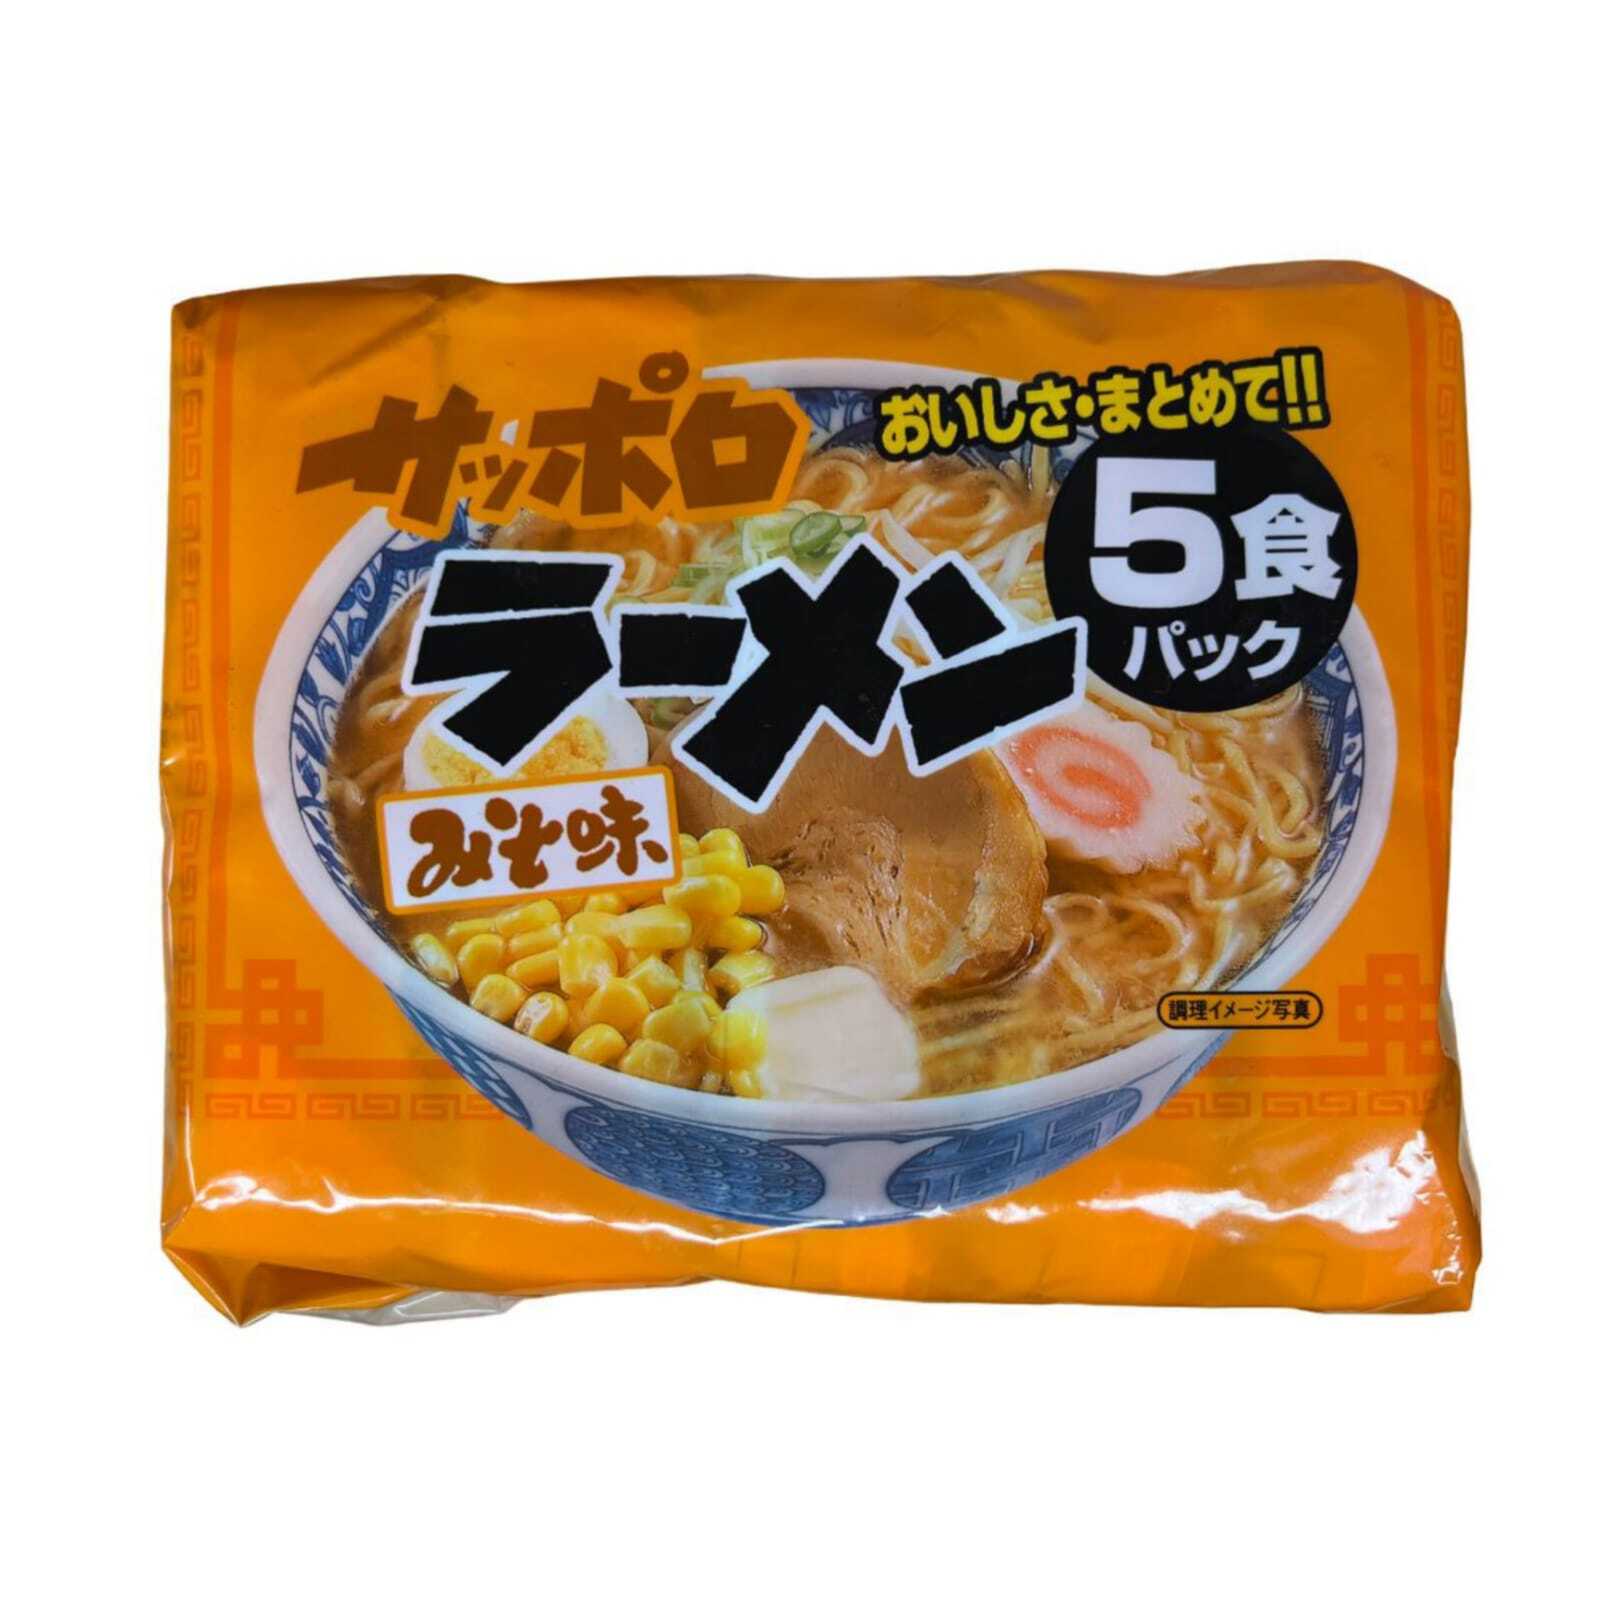 Лапша быстрого приготовления Sunaoshi с супом мисо Sapporo Miso, 84 г, 5 шт